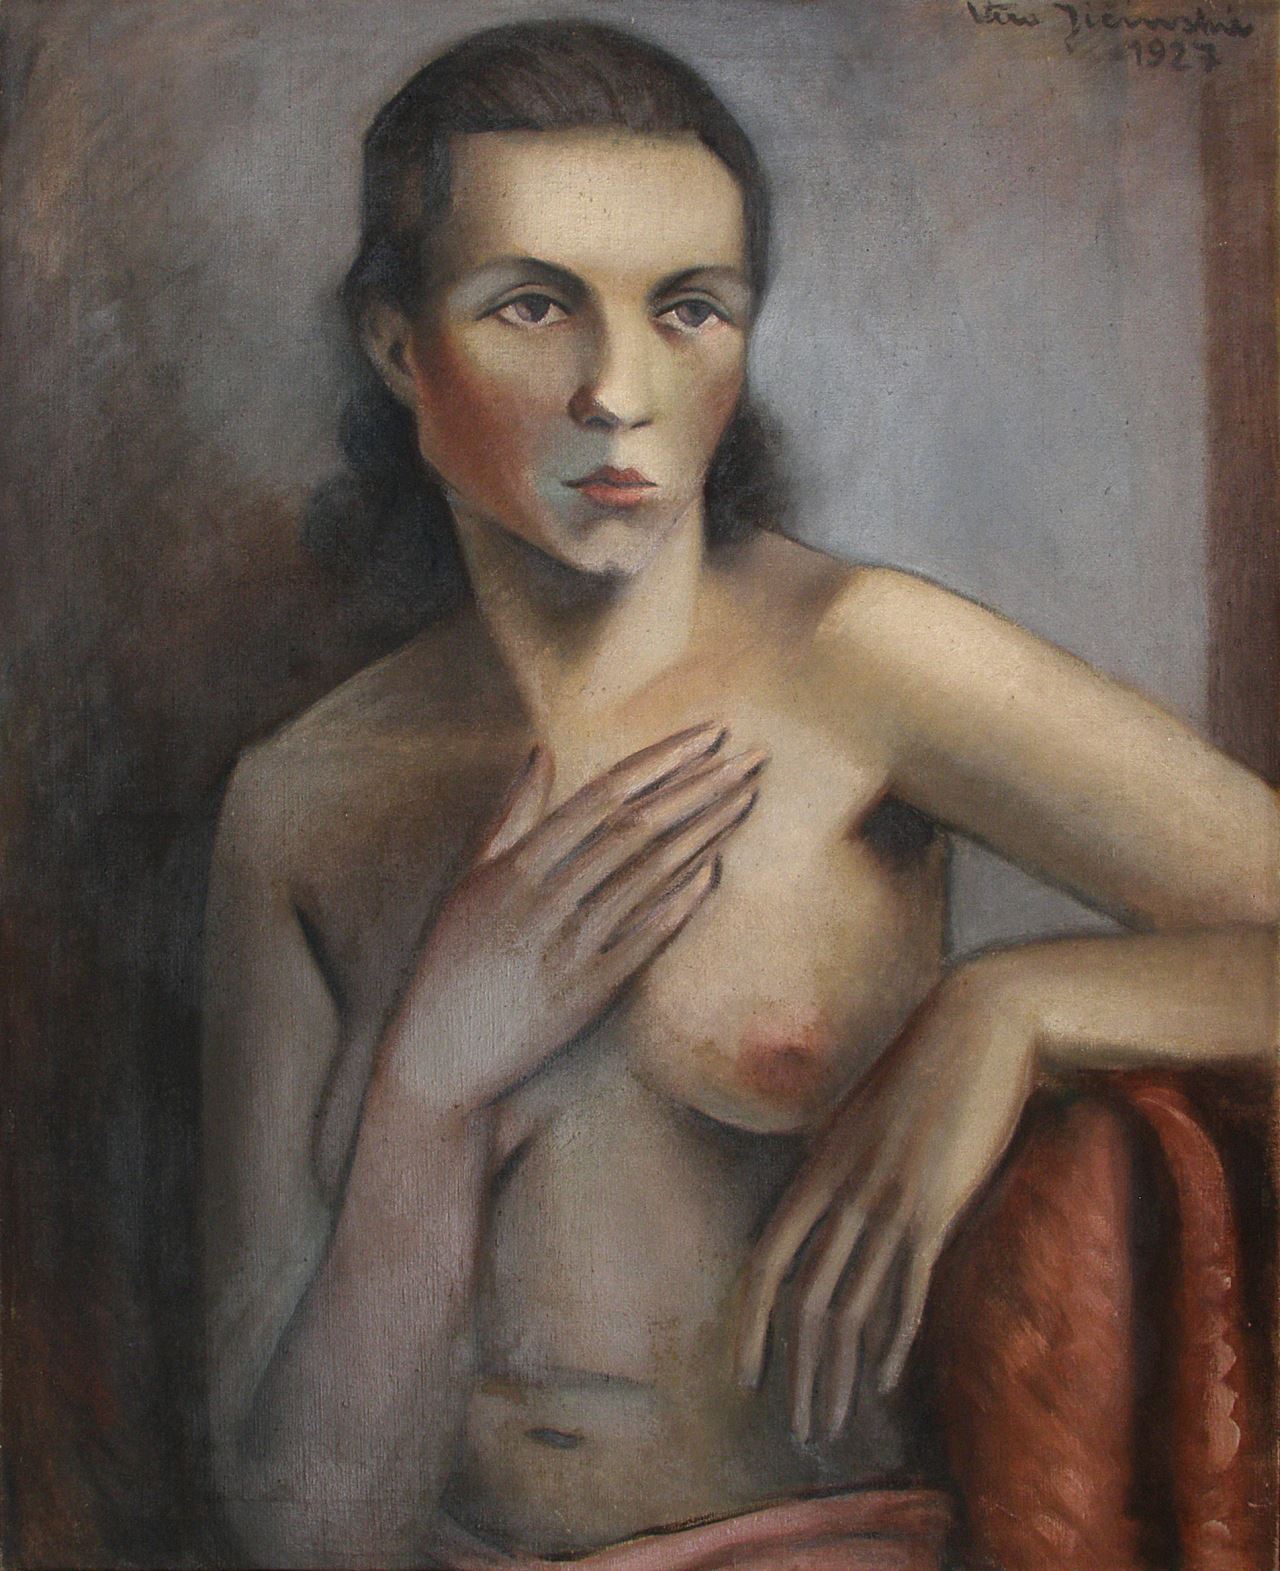 Ženský půlakt (Lydia Wisiak), 1927, olej na plátně.